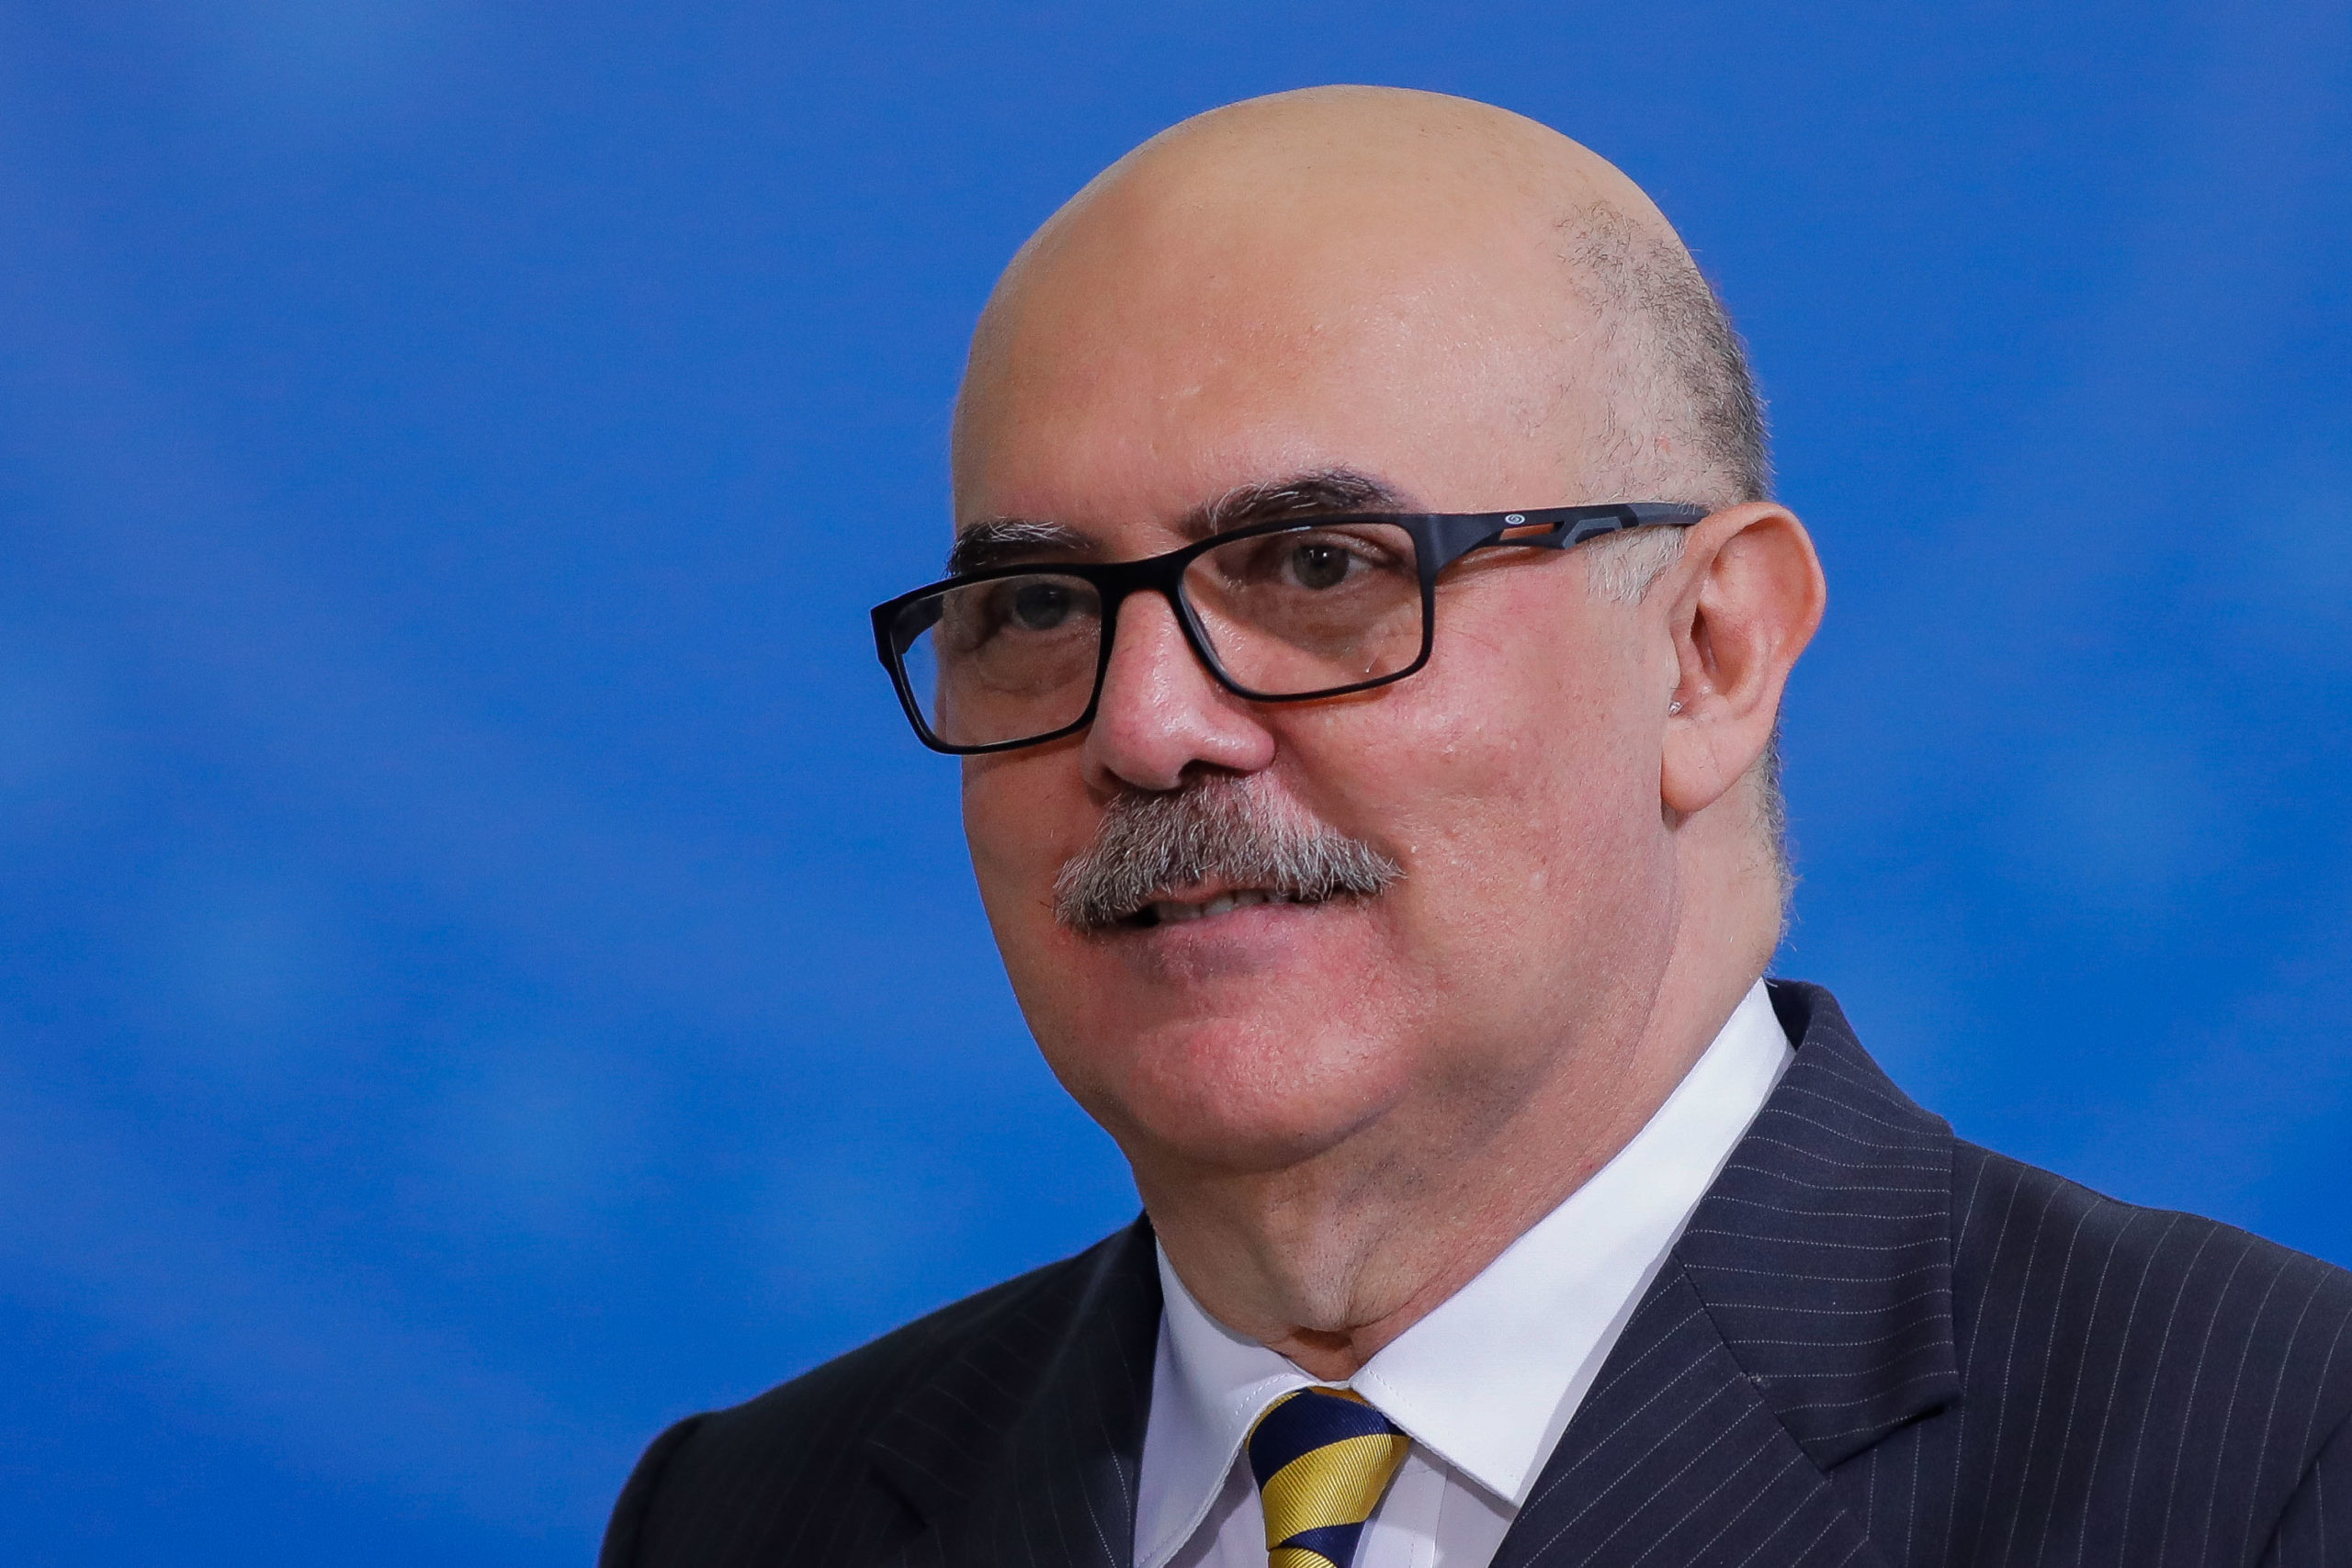 Foto do ministro Milton Ribeiro usando óculos e com fundo azul.